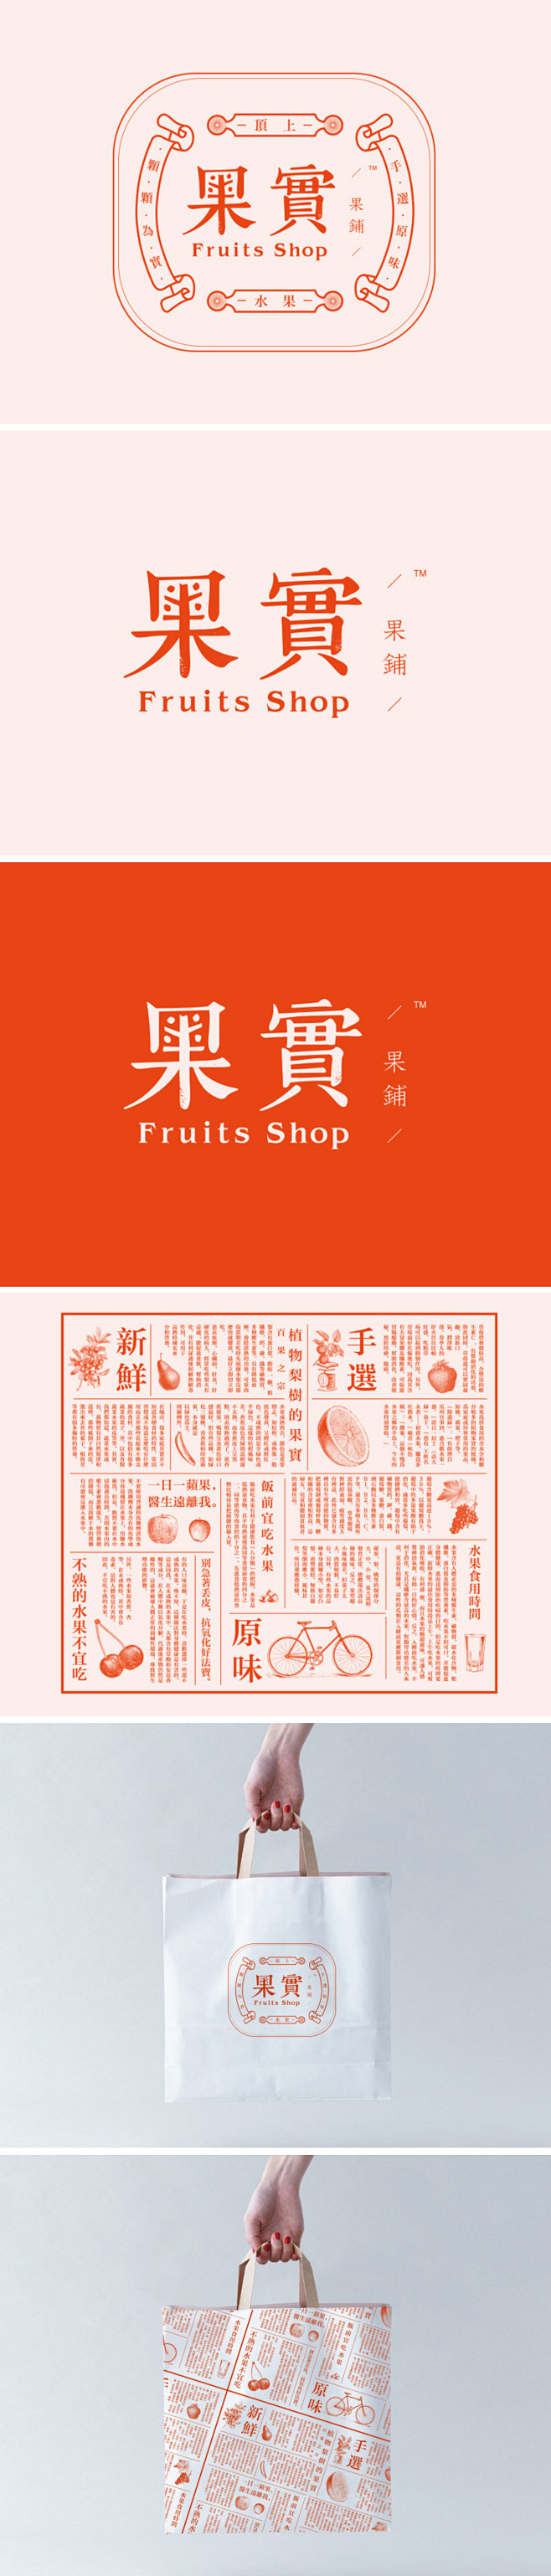 果实果铺品牌设计VI